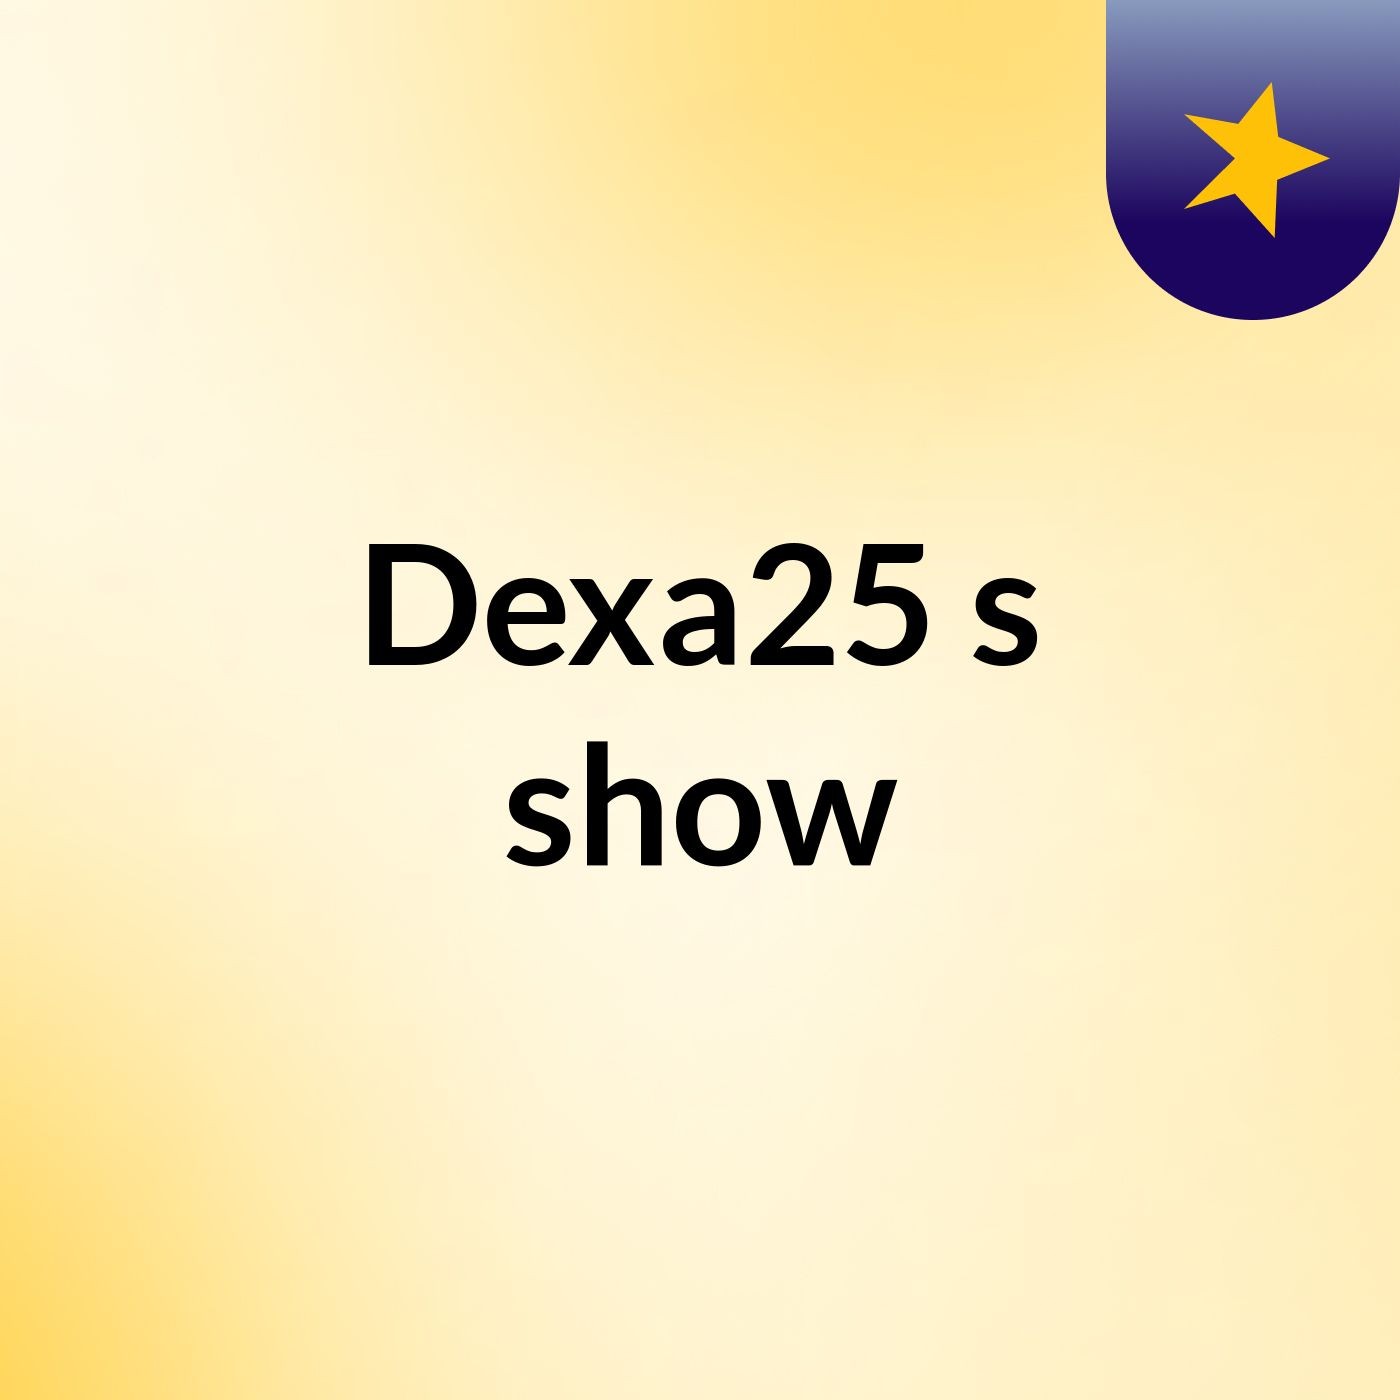 Dexa25's show